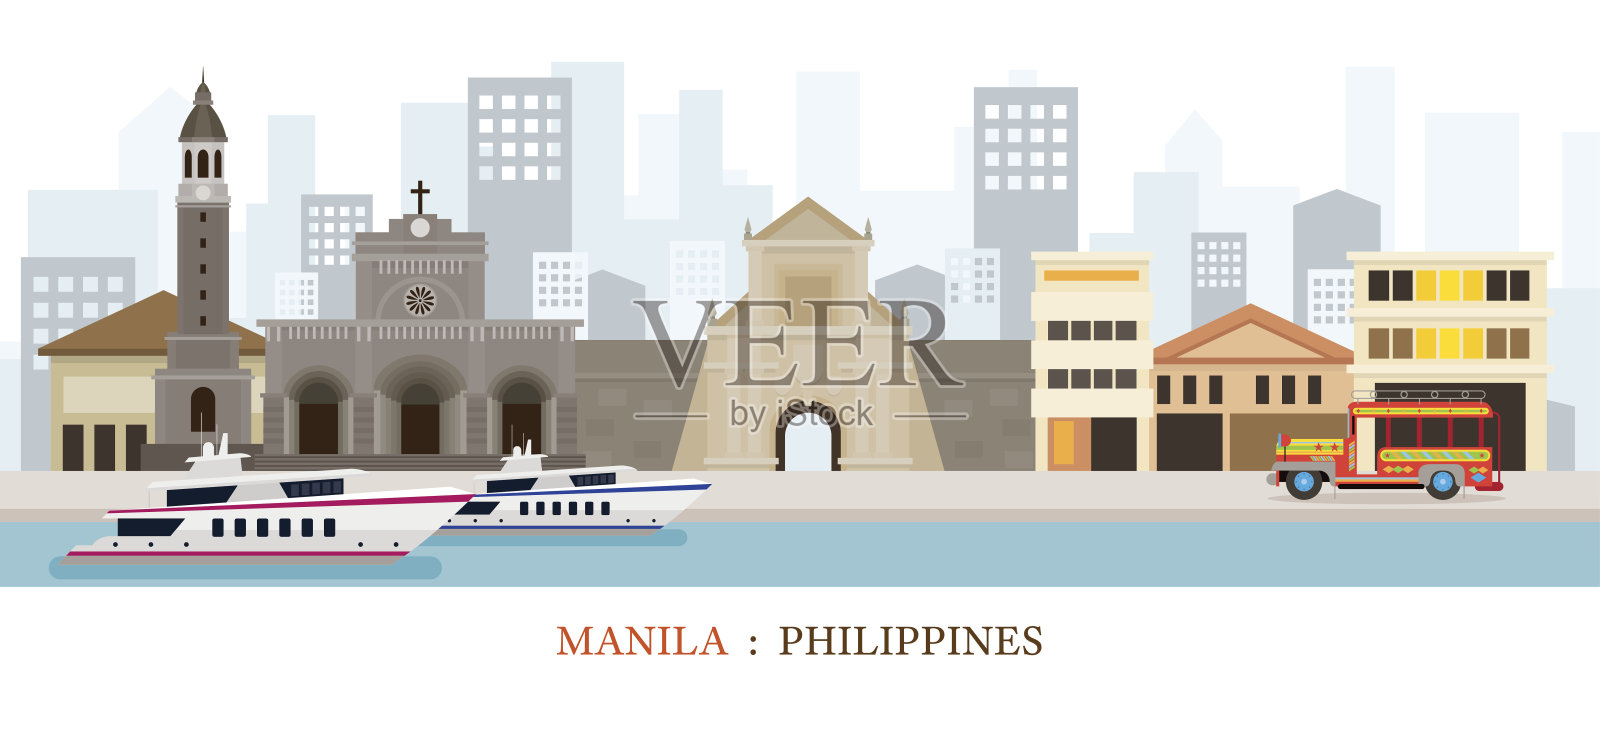 菲律宾马尼拉地标天际线插画图片素材